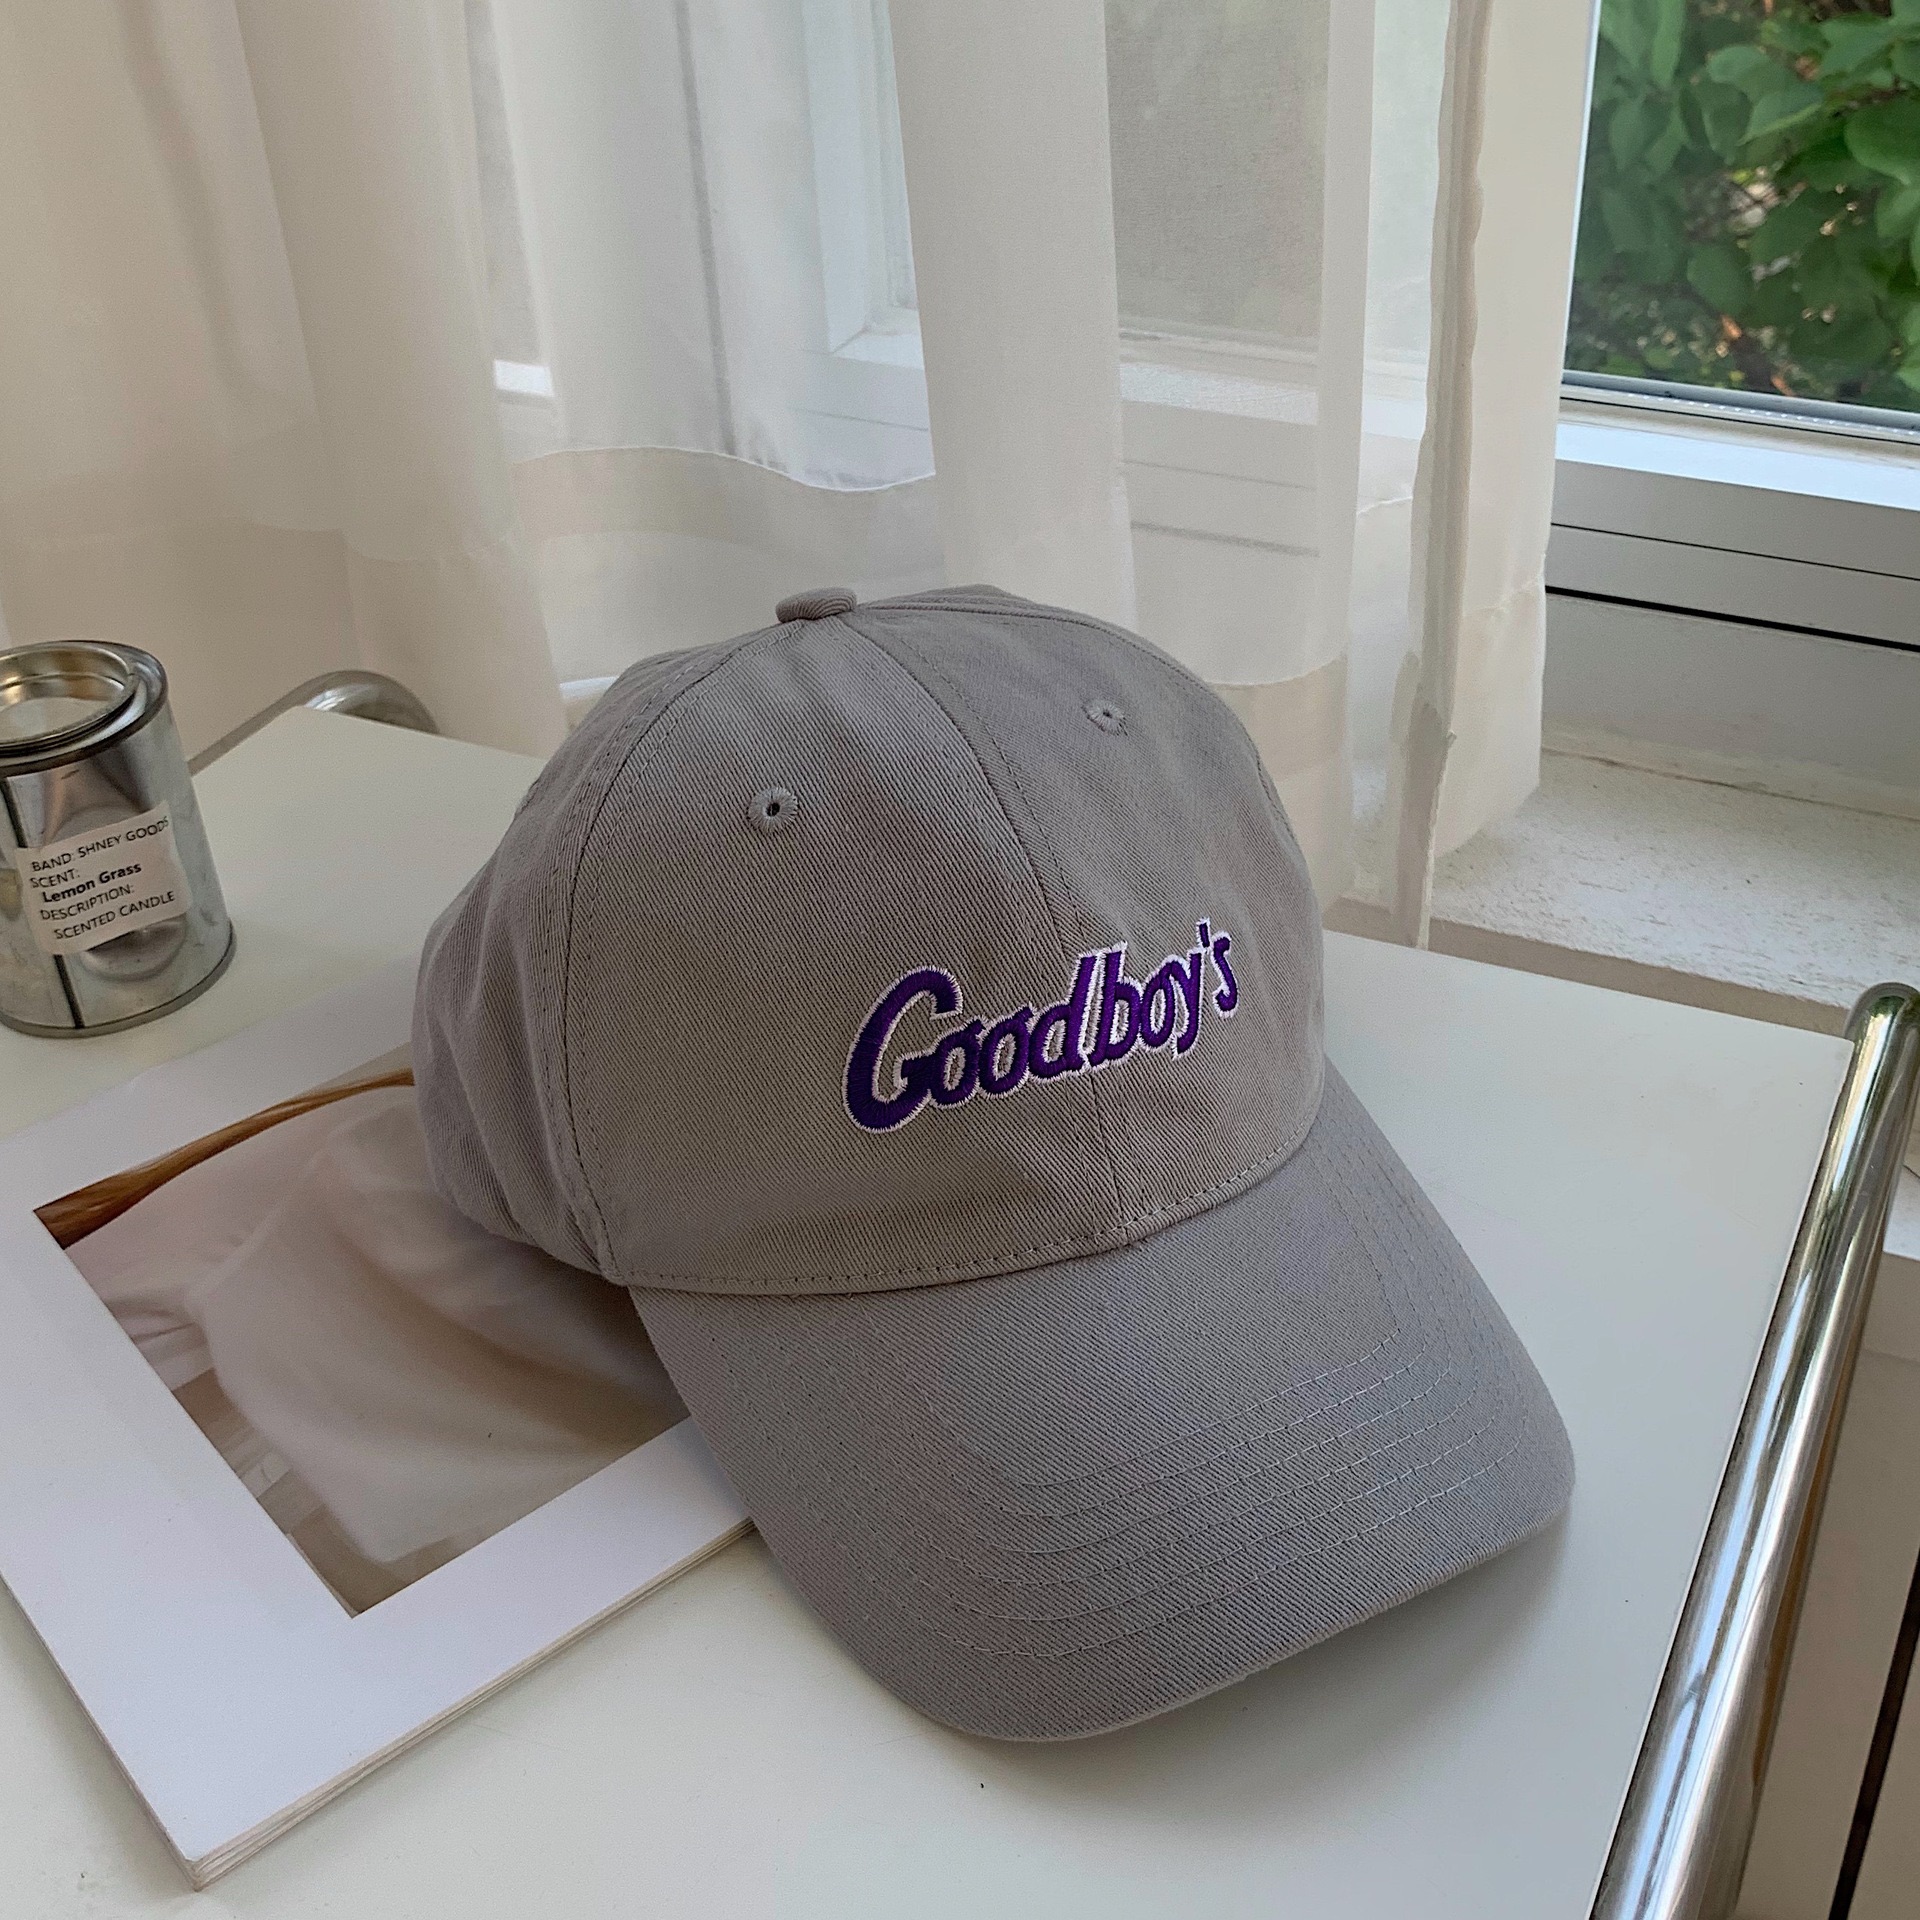 พร้อมส่งจากไทย หมวกปัก GoodBoy’s รุ่นใหม่ล่าสุด สีน่ารักมากๆ